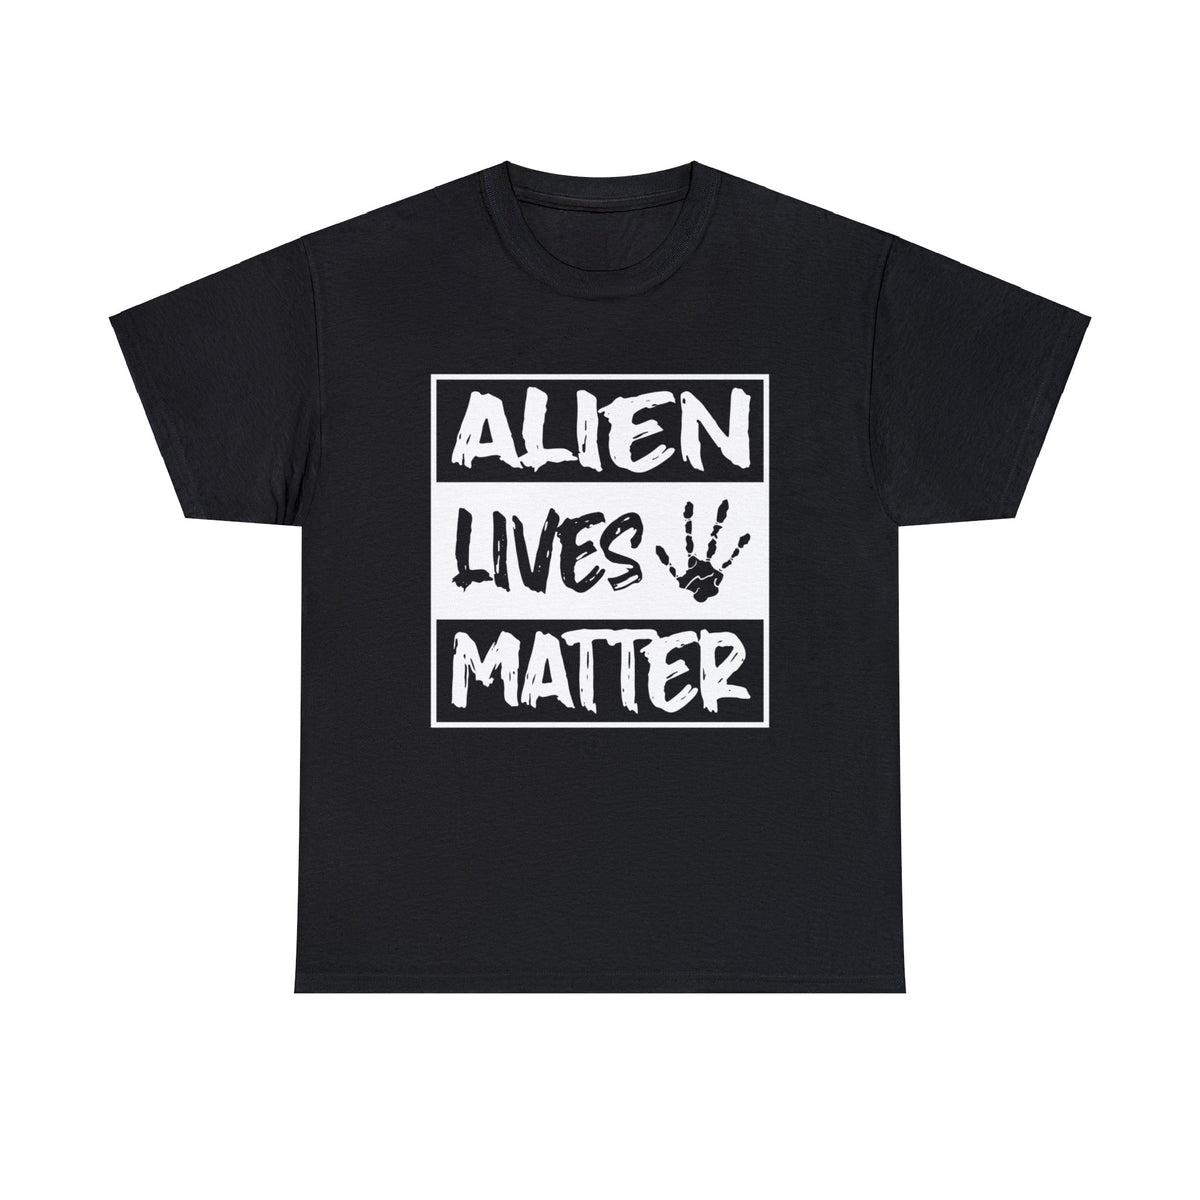 Alien Lives Matter! - T-Shirt